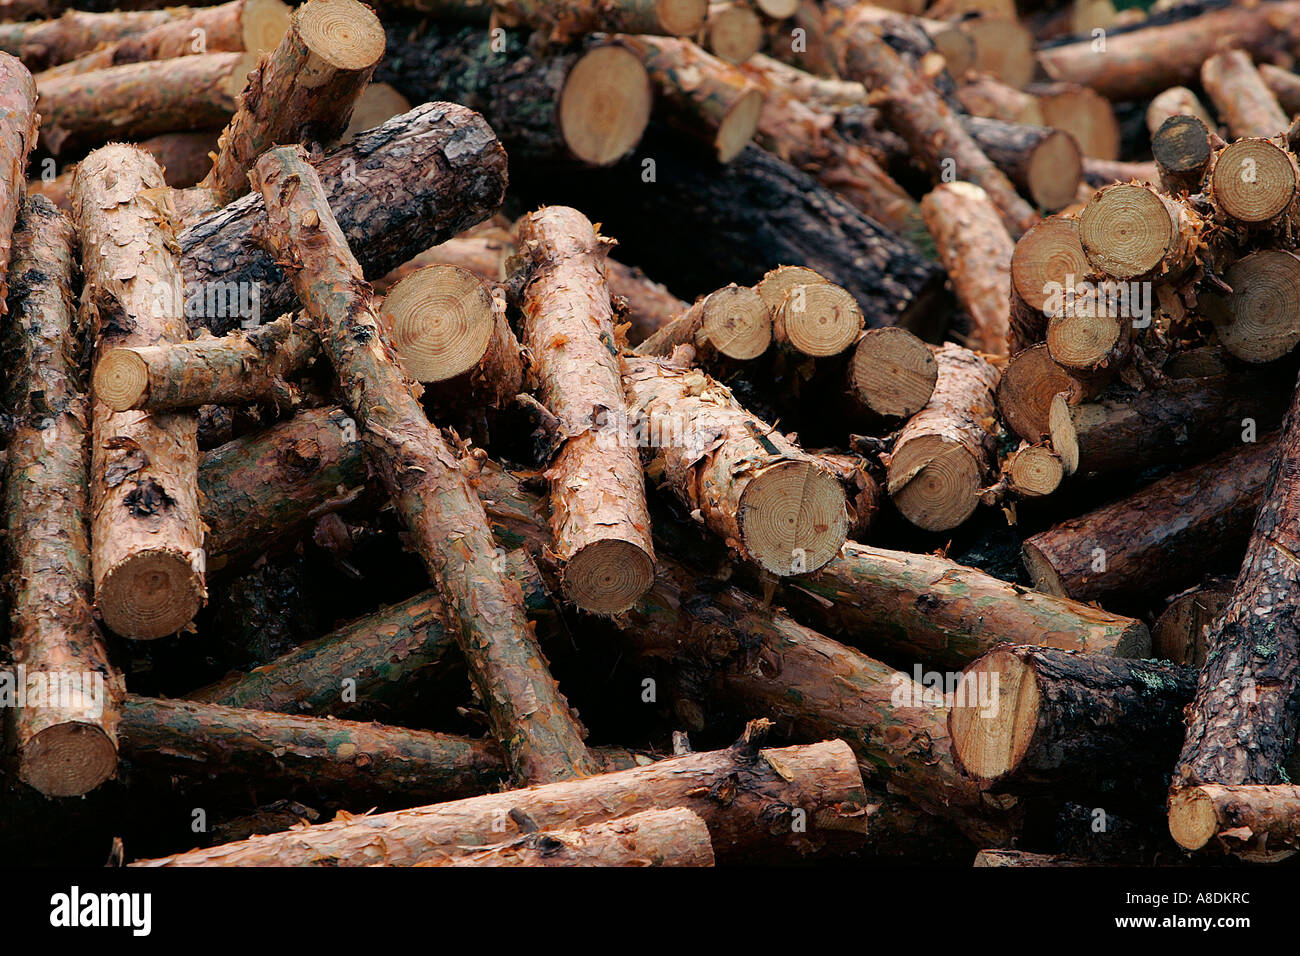 Couper les troncs d'arbres au bord de la route en attente de transports agriculture alimentation écologie environnement coupe bois de chauffage Exploitation forestière Industrie Banque D'Images